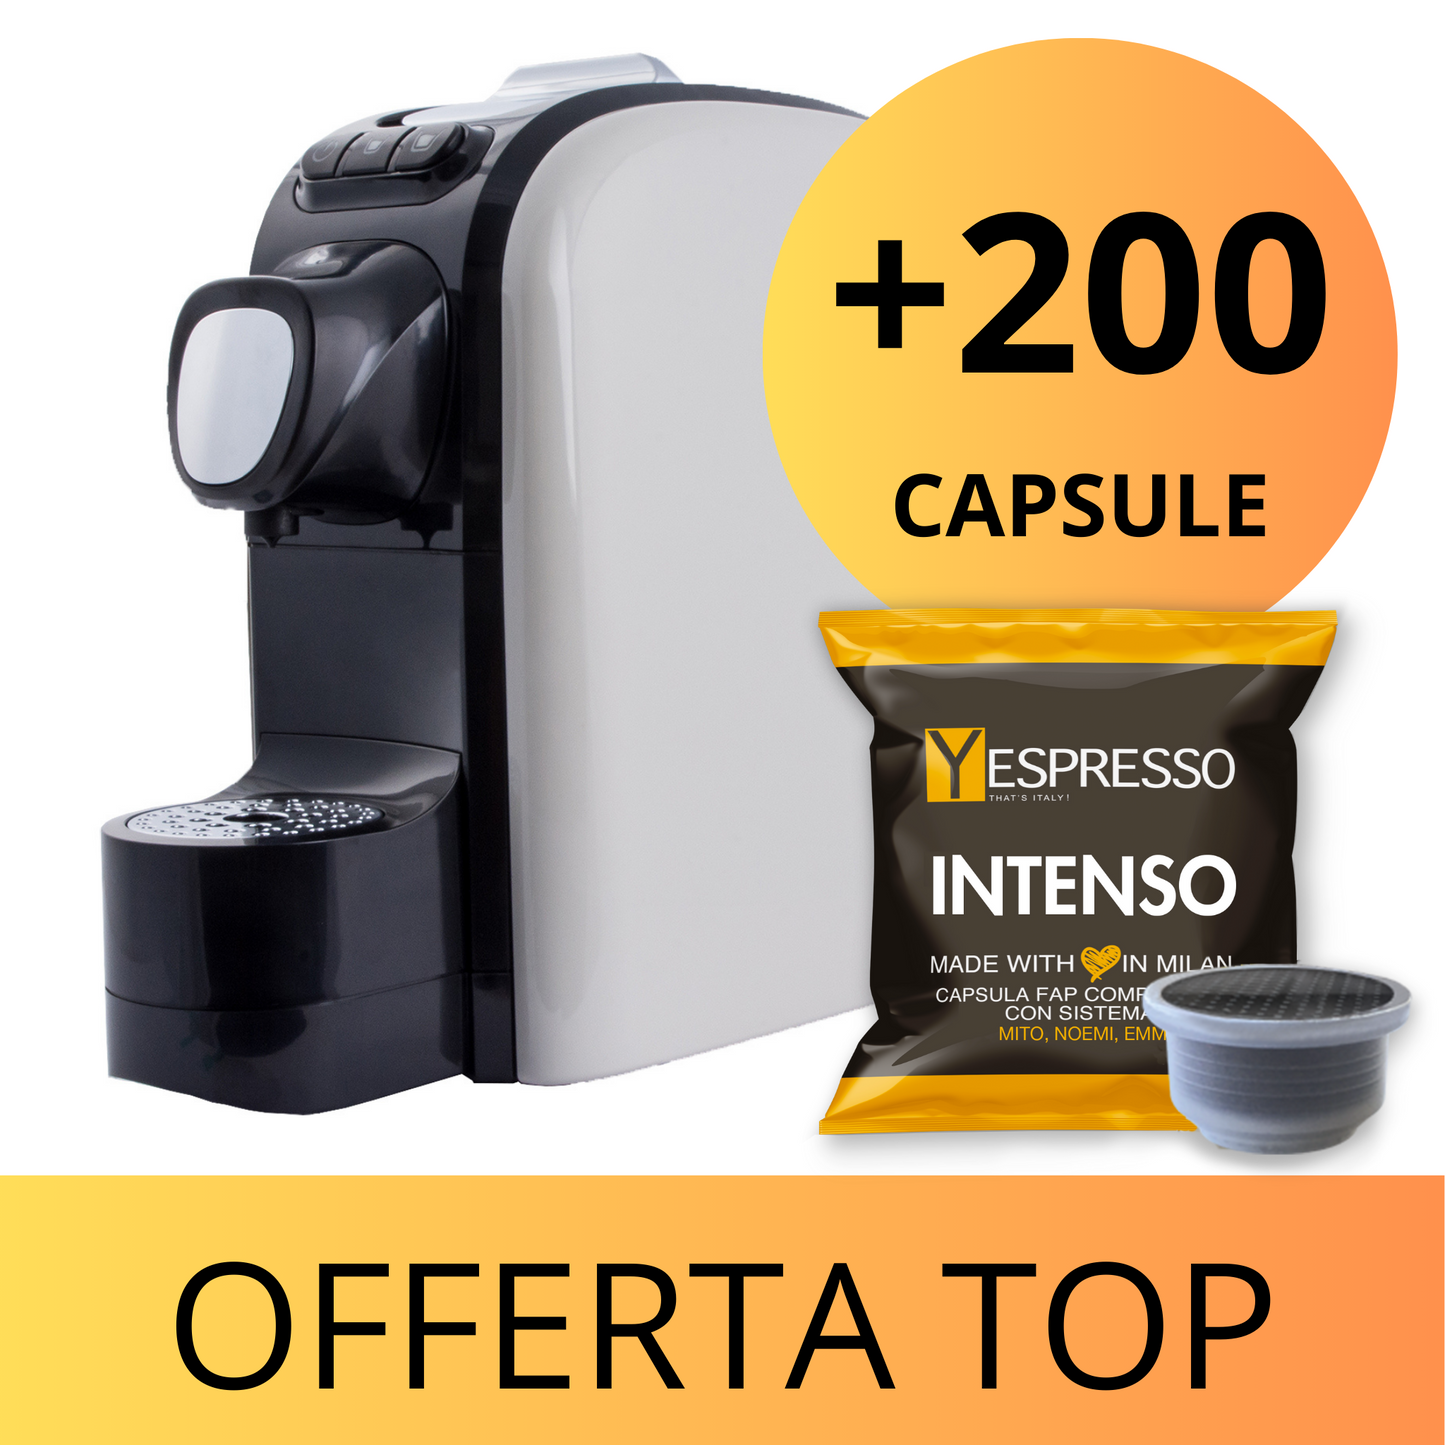 Macchina caffè NOEMI + 200 capsule caffè Linea S Espresso INTENSO